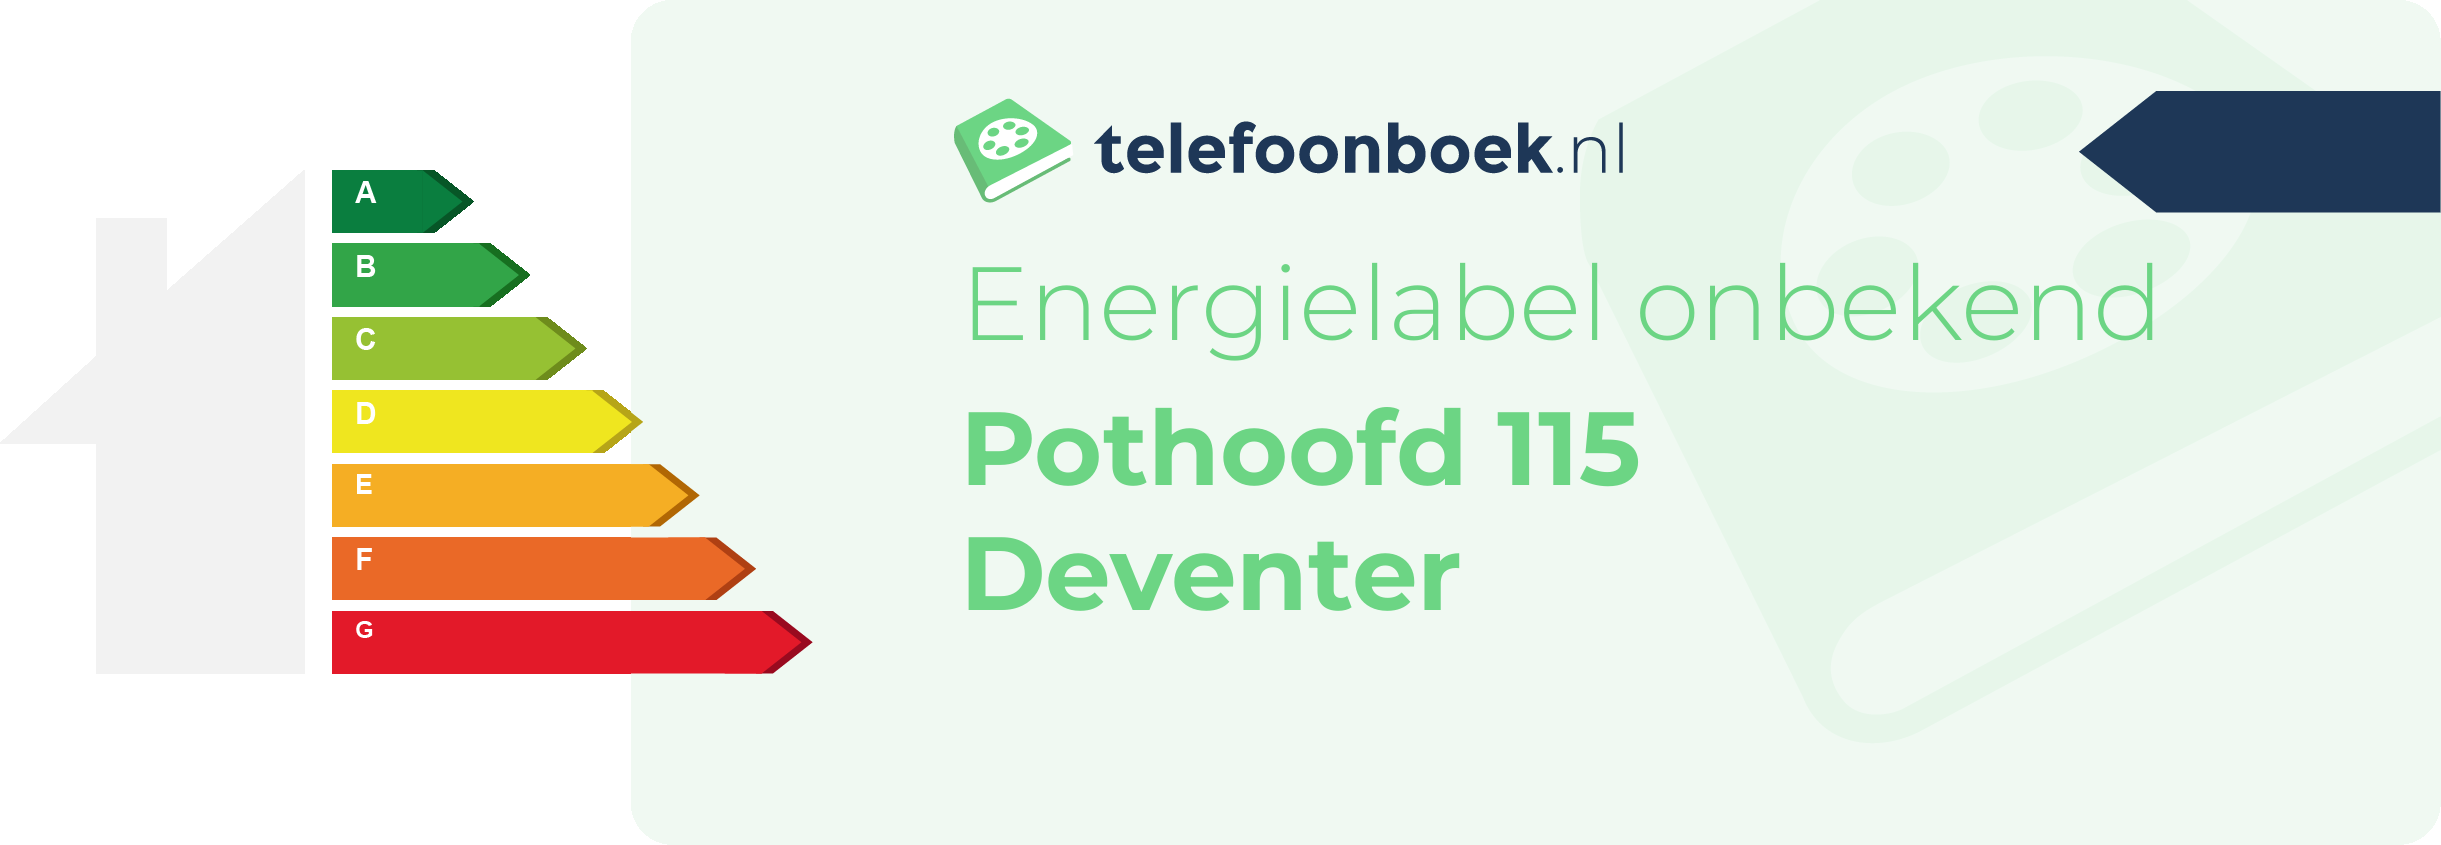 Energielabel Pothoofd 115 Deventer